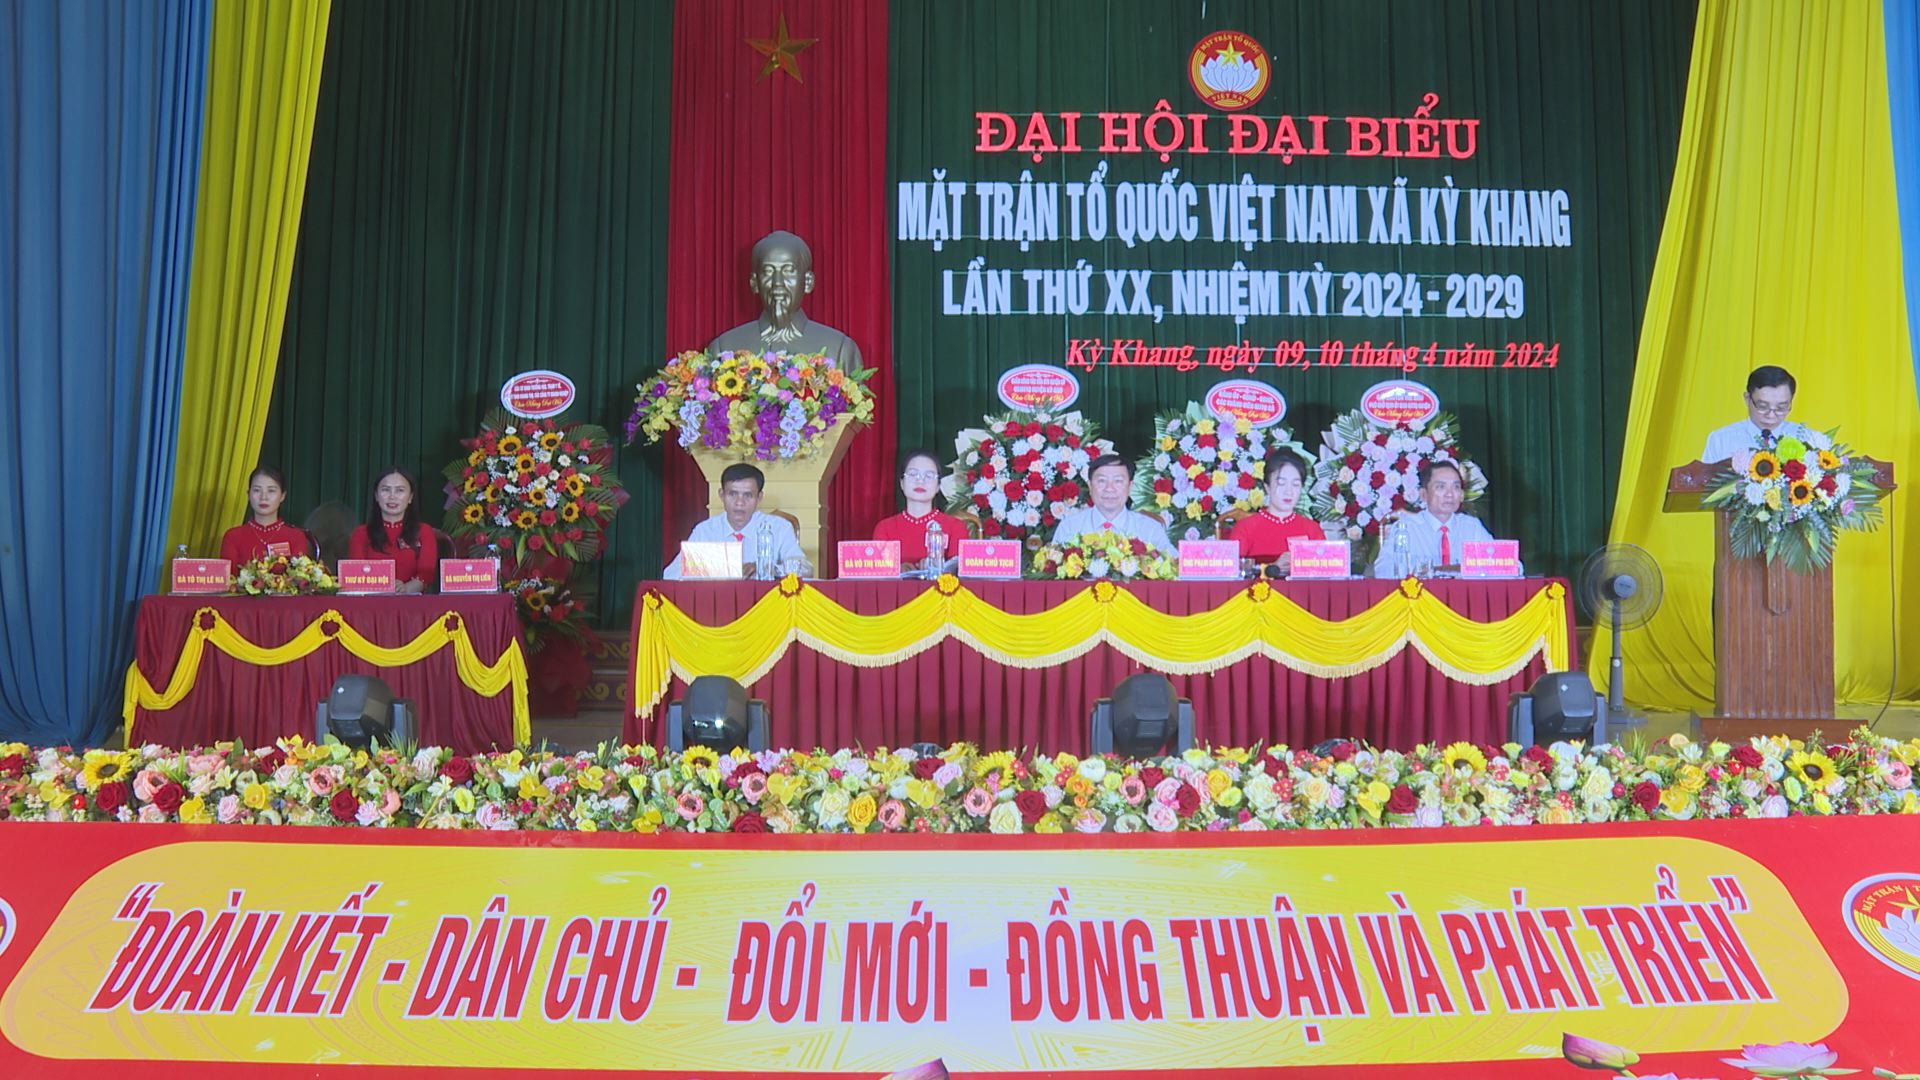 Đại hội đại biểu MTTQ Việt Nam xã Kỳ Khang lần thứ XX